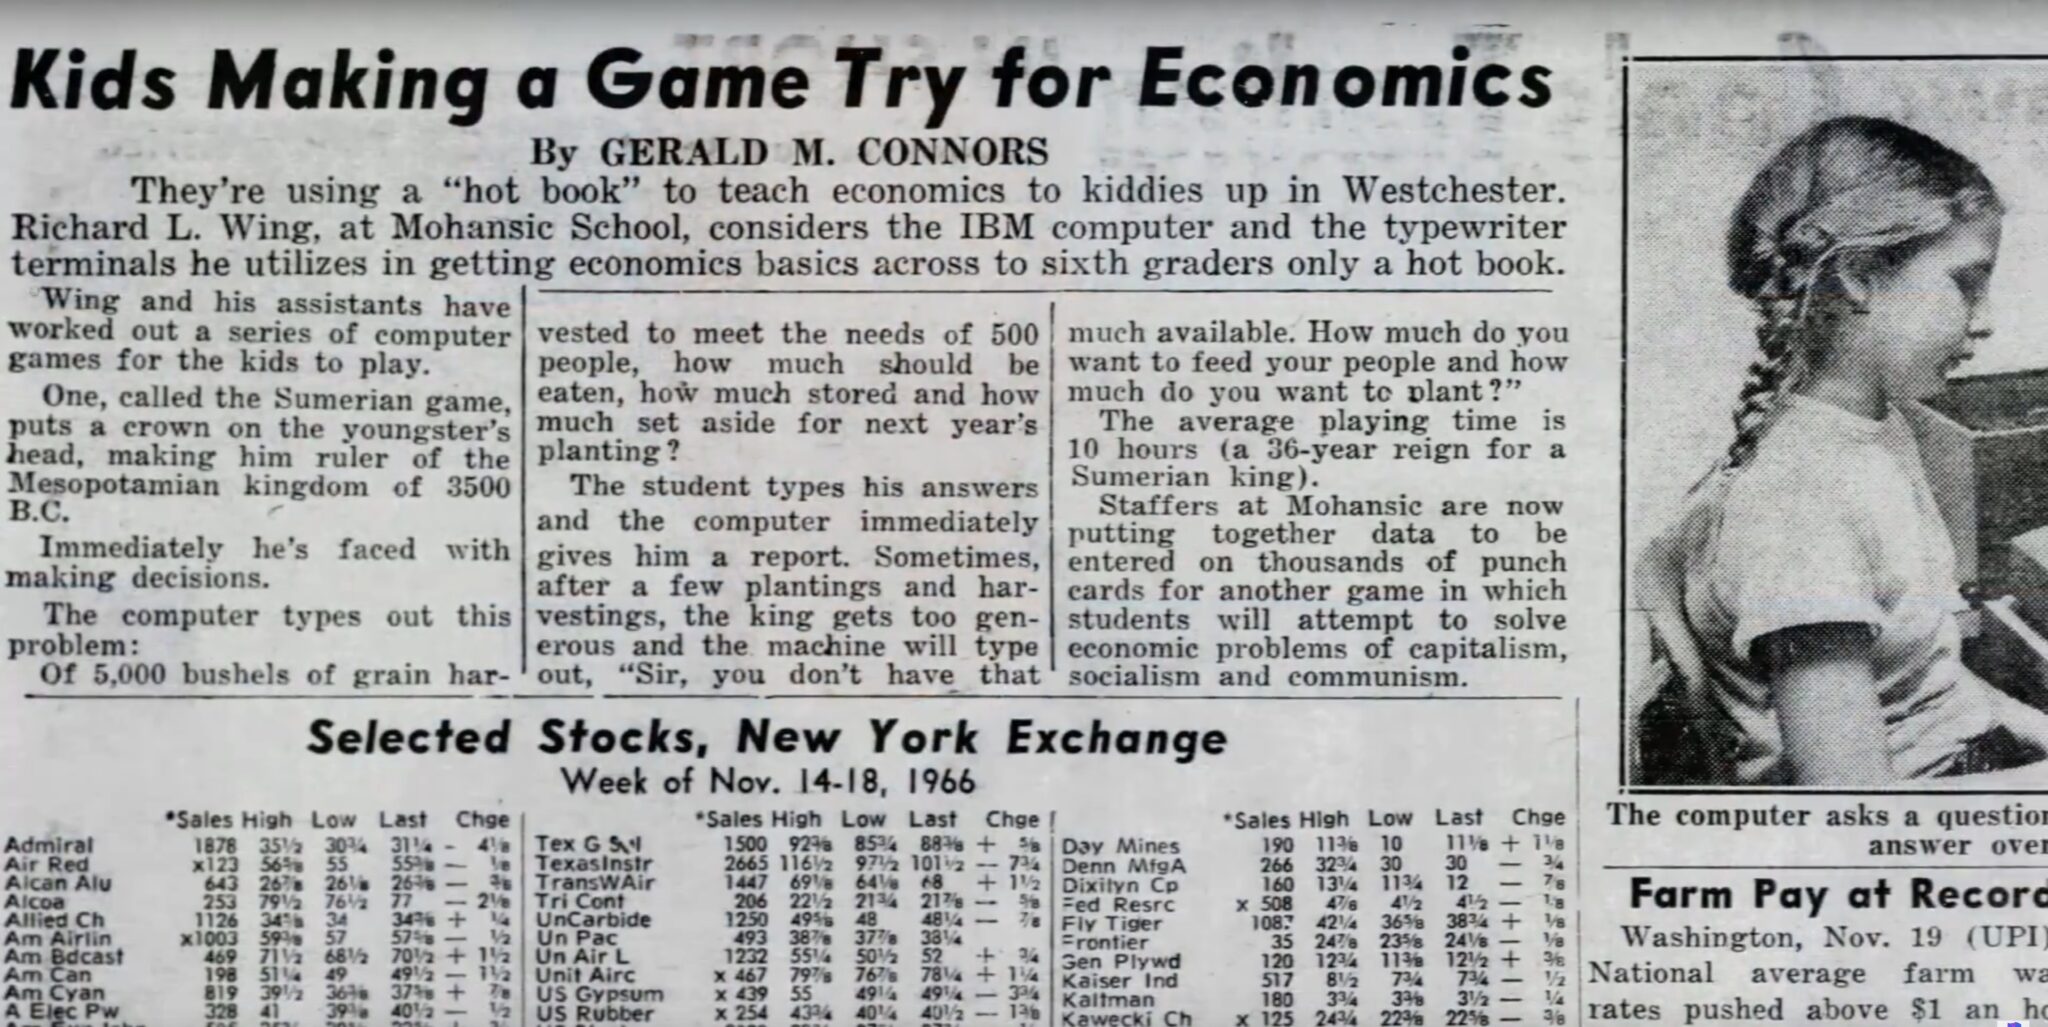 (El Juego de los Sumerios también aparece en la sección de negocios de varios periódicos, aquí en noviembre de 1966. La acción de Texas Instruments está justo en 101 dólares)